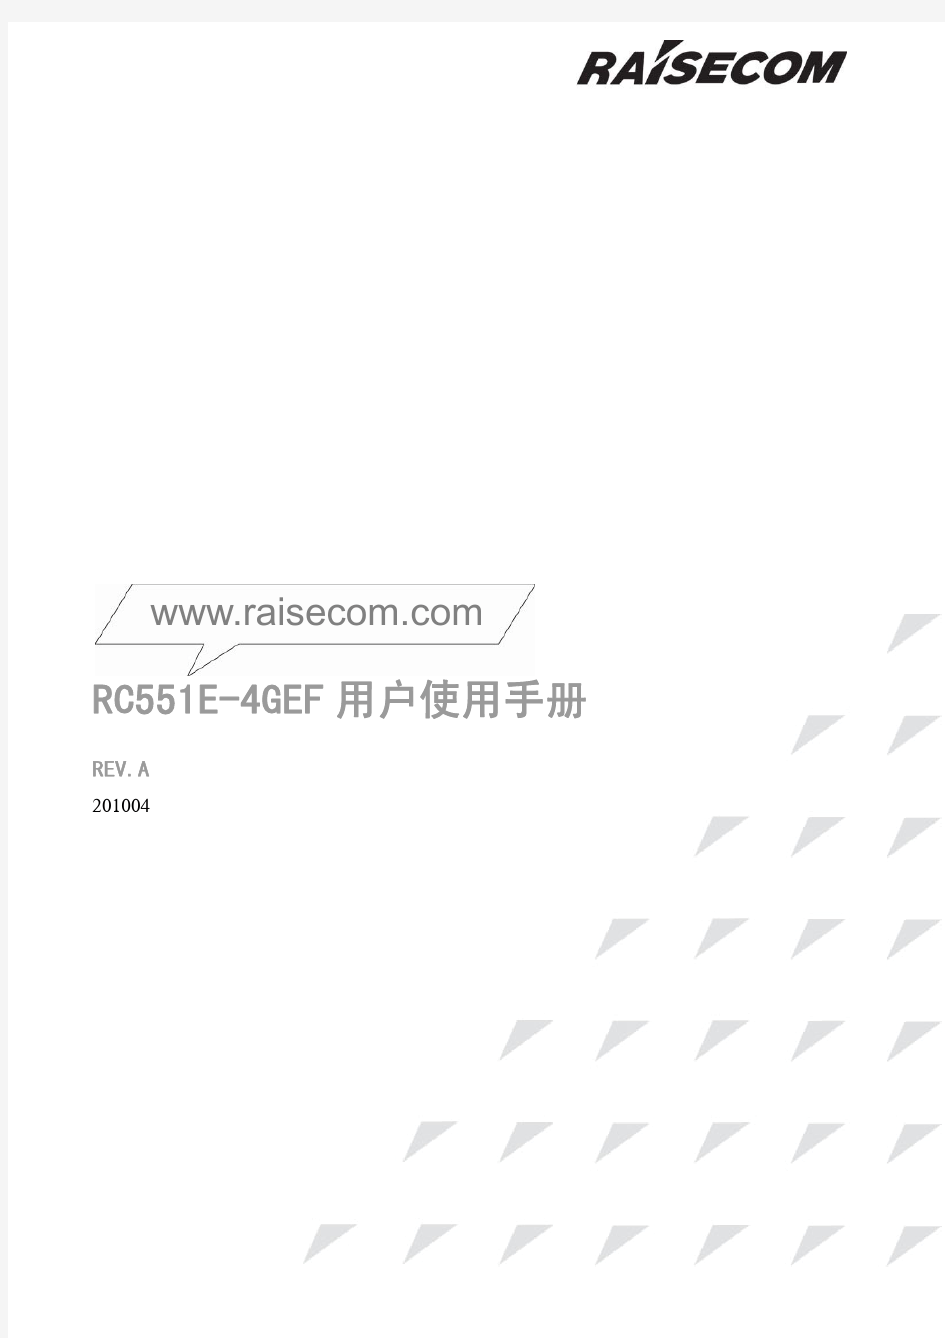 RC551E-4GEF(REV.A)用户使用手册201004